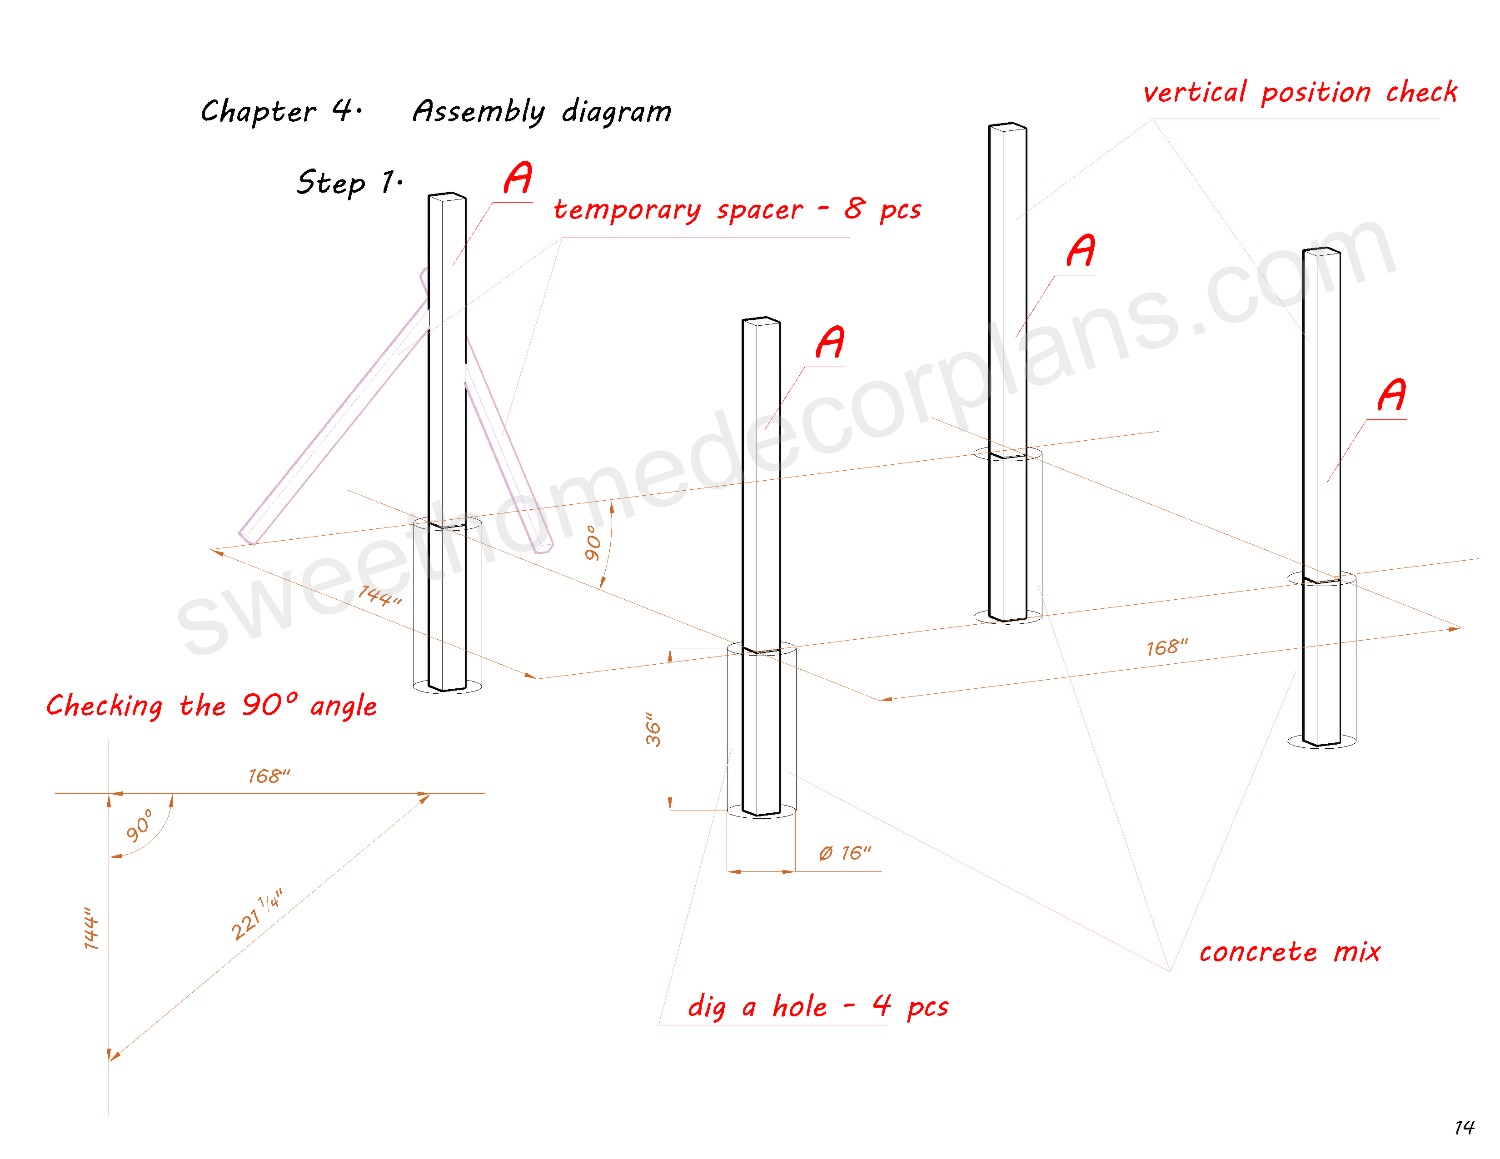 Diy-assembly-diagram-14-х-12-wooden-gable-pavilion-plans